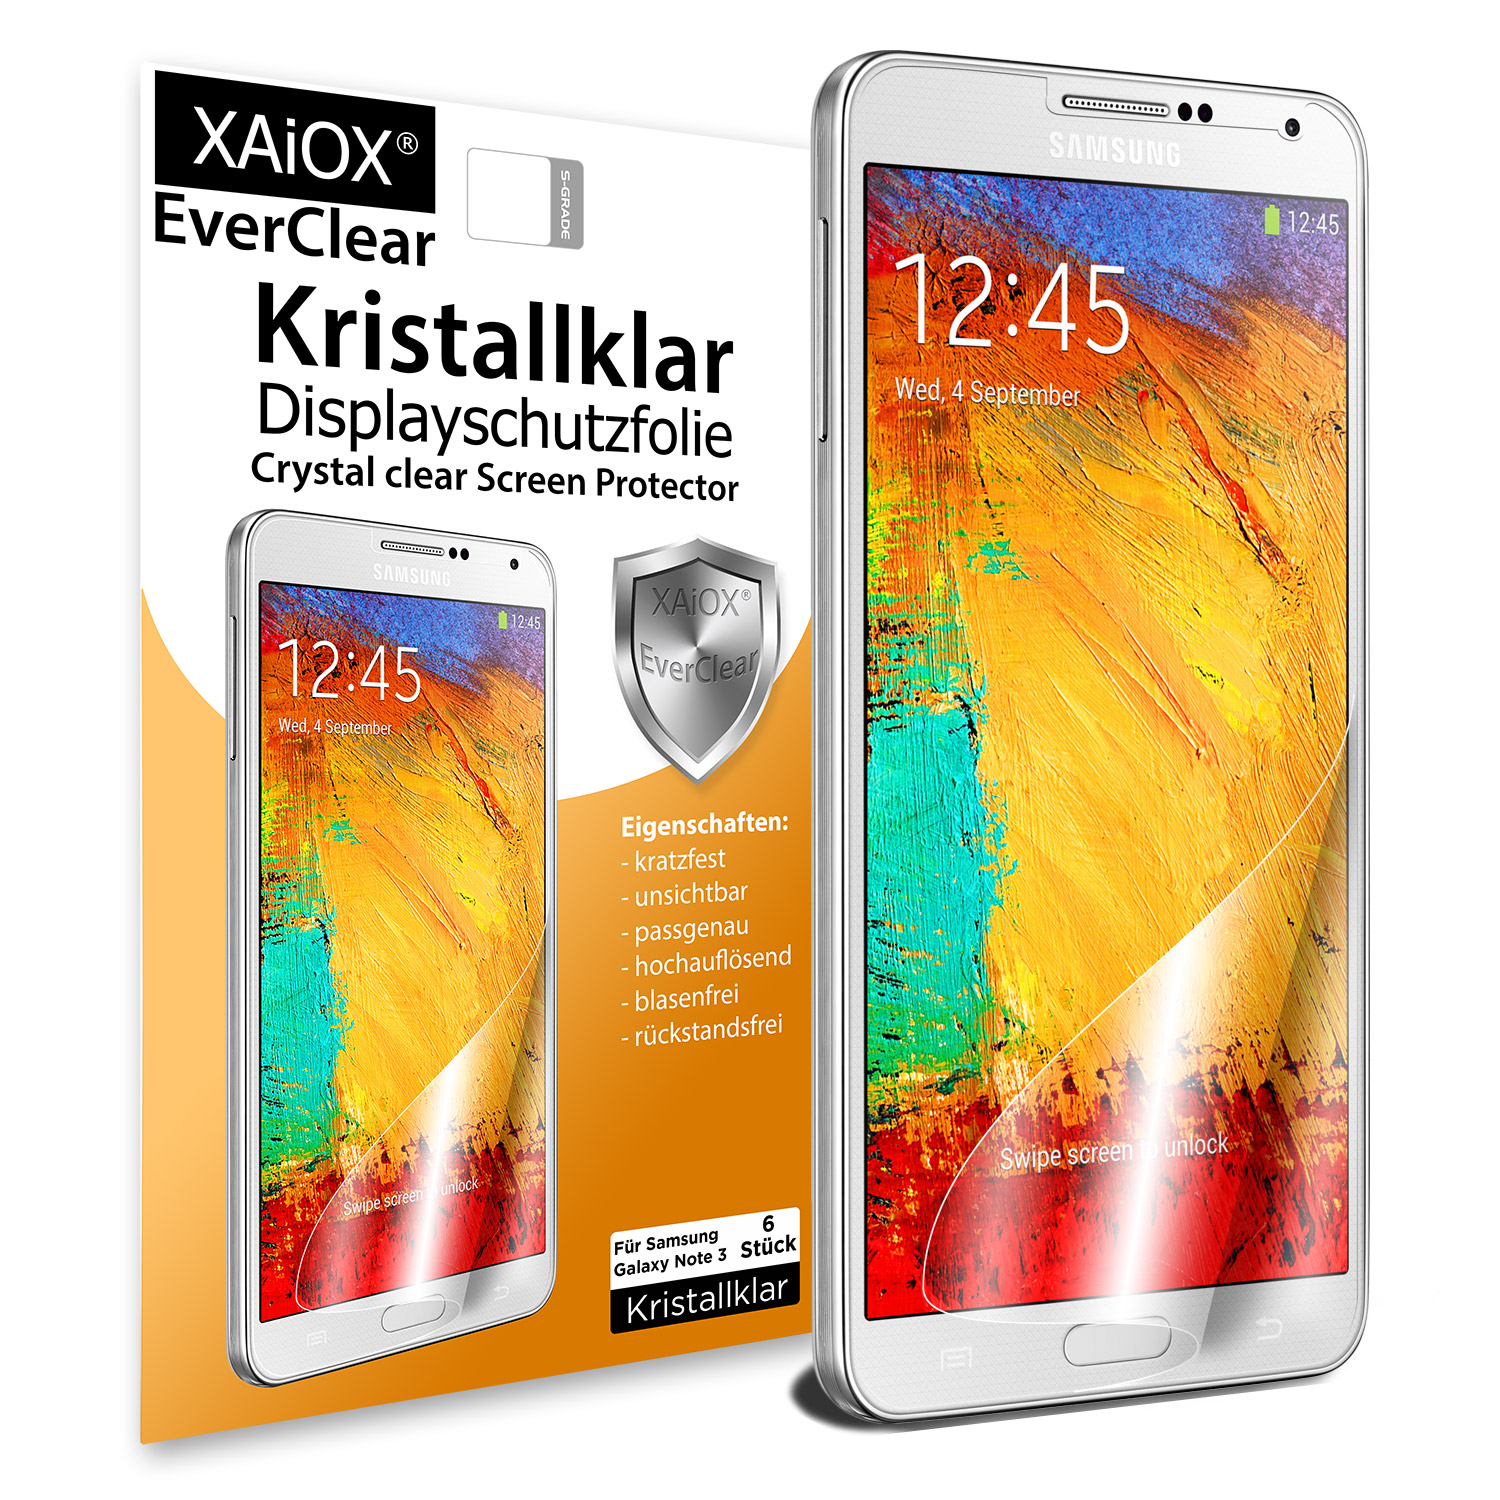 1 x XAiOX Everclear Displayschutzfolie für Galaxy Note 3 N9000(6er Set)